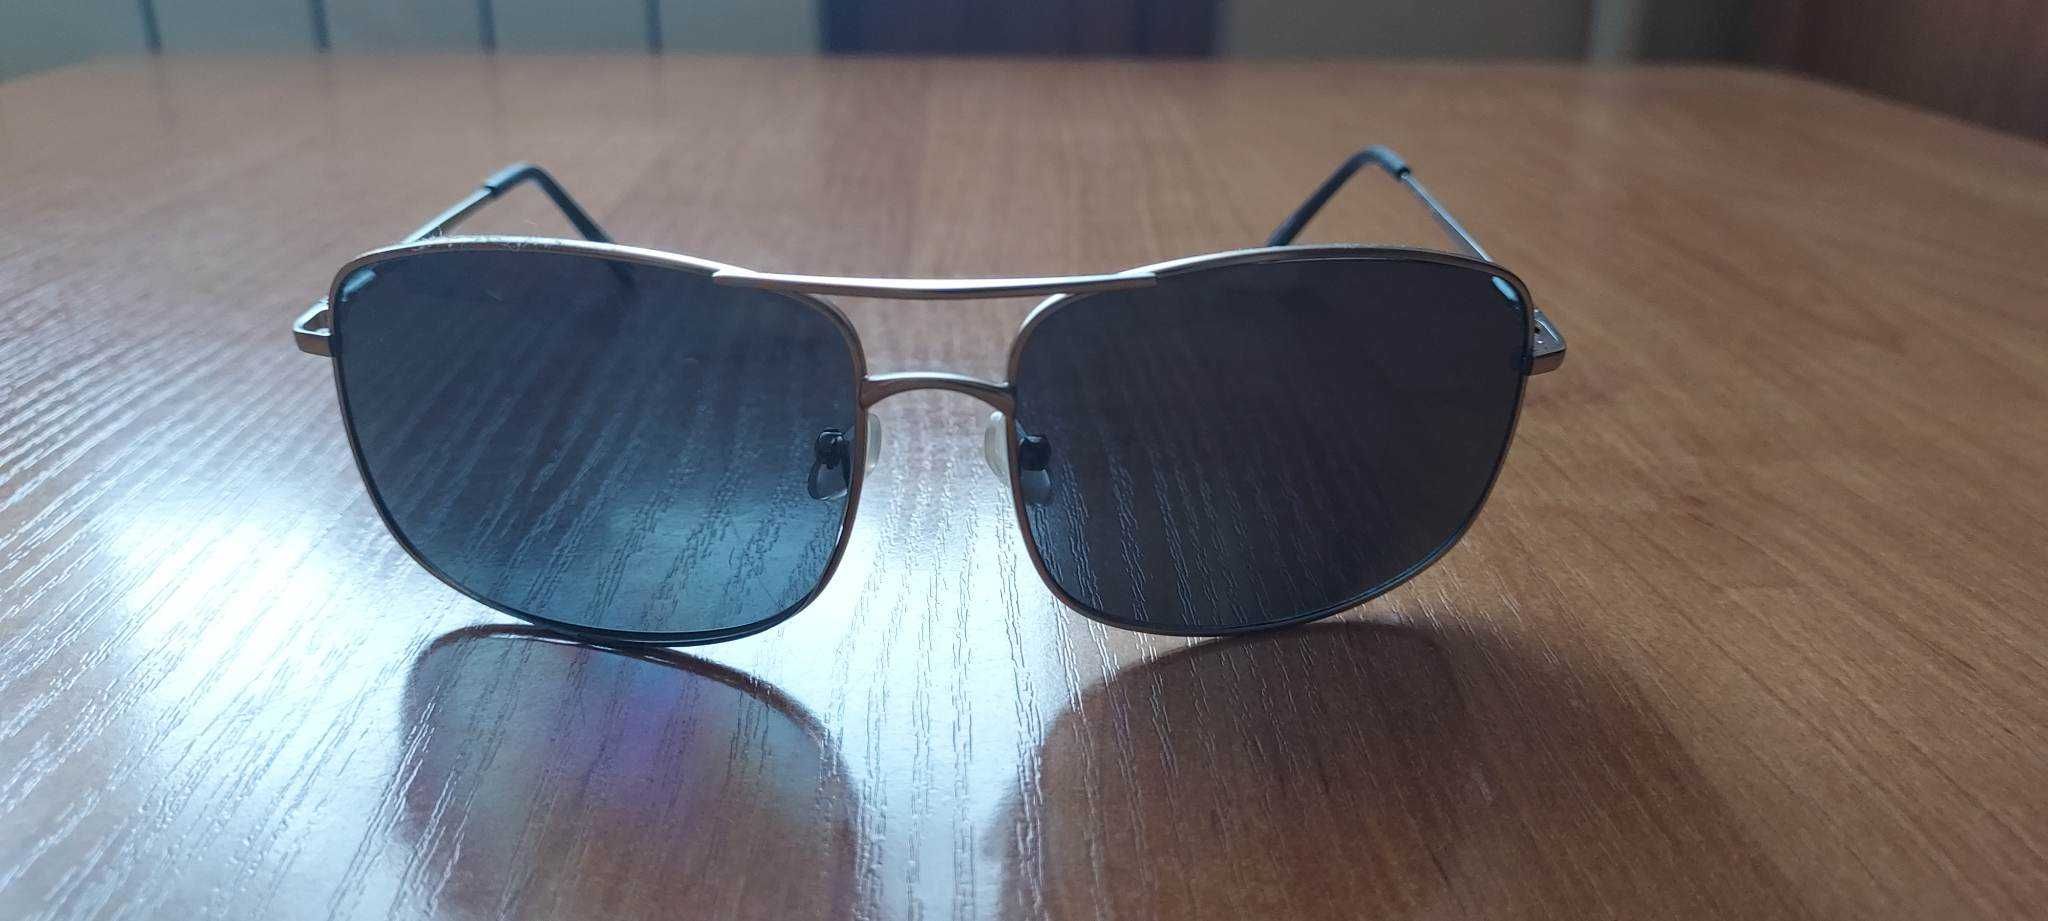 Okulary przeciwsłoneczne męskie